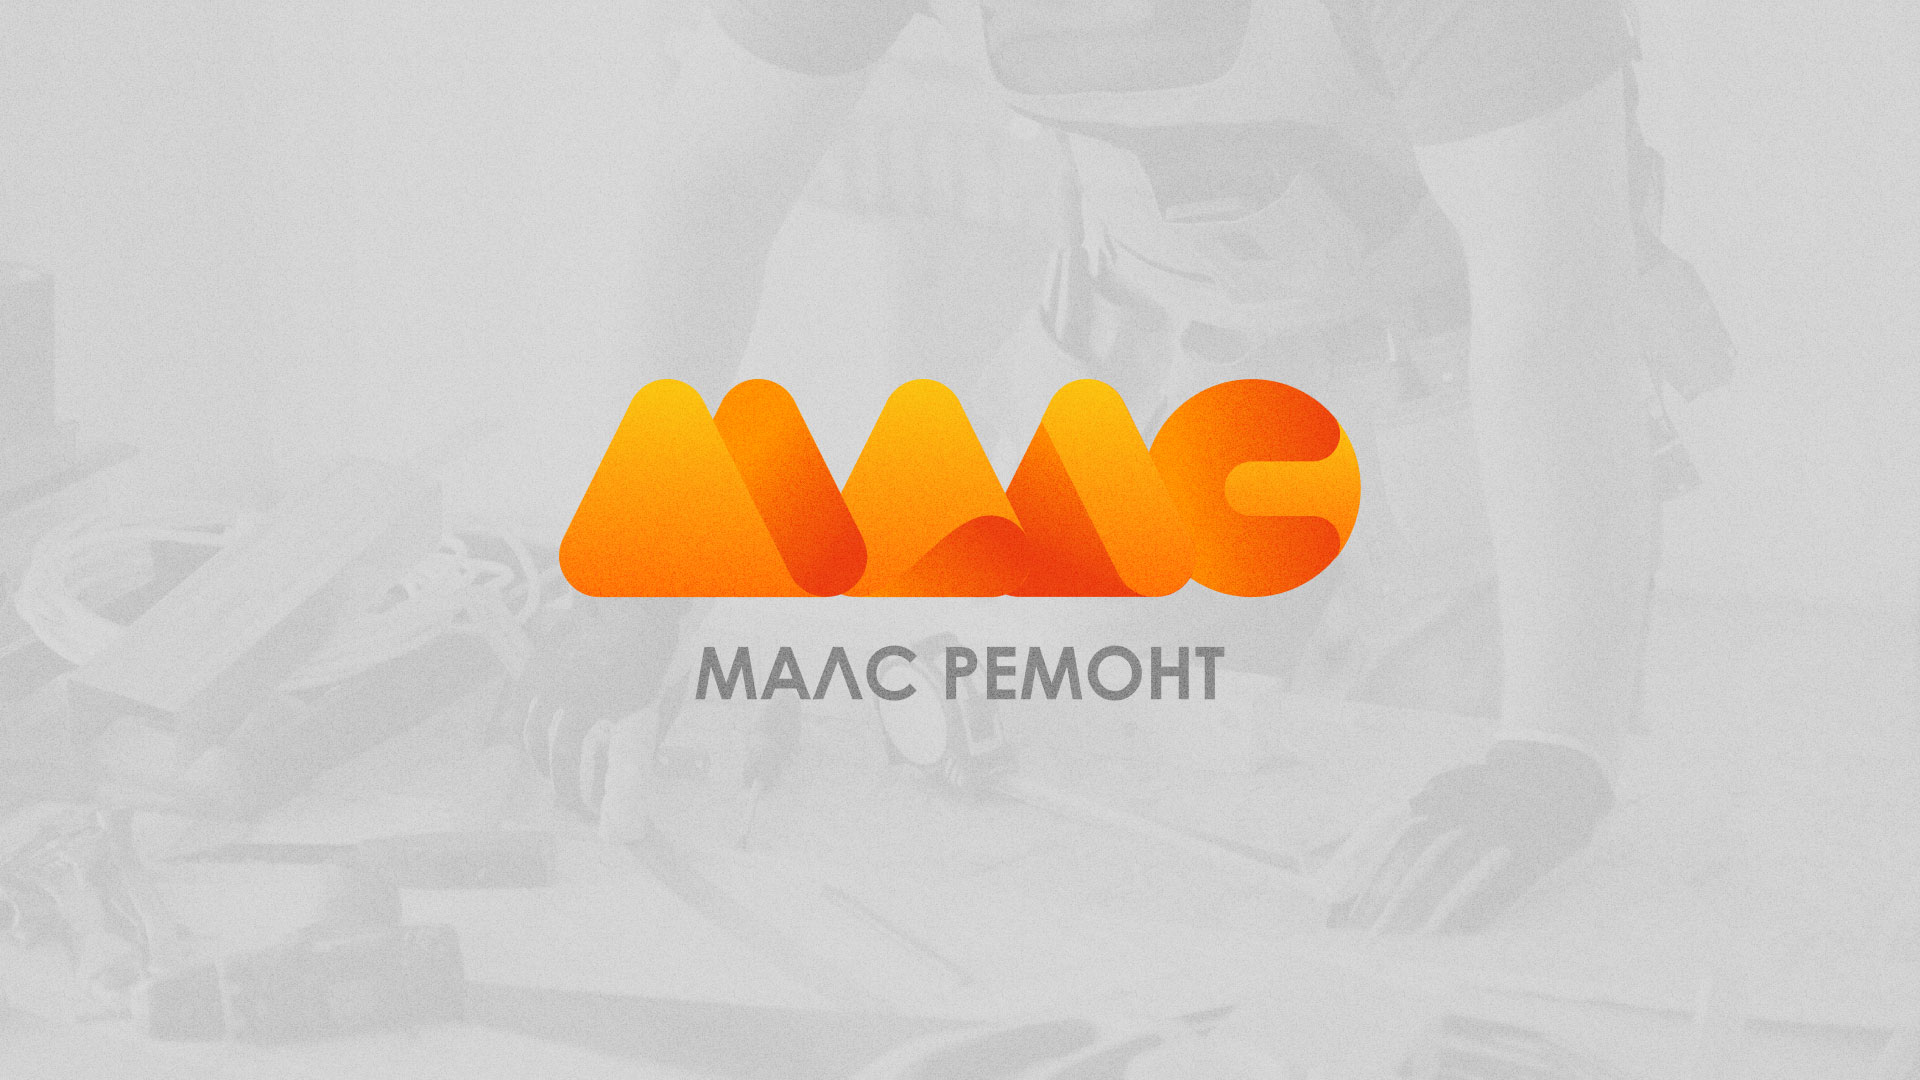 Создание логотипа для компании «МАЛС РЕМОНТ» в 